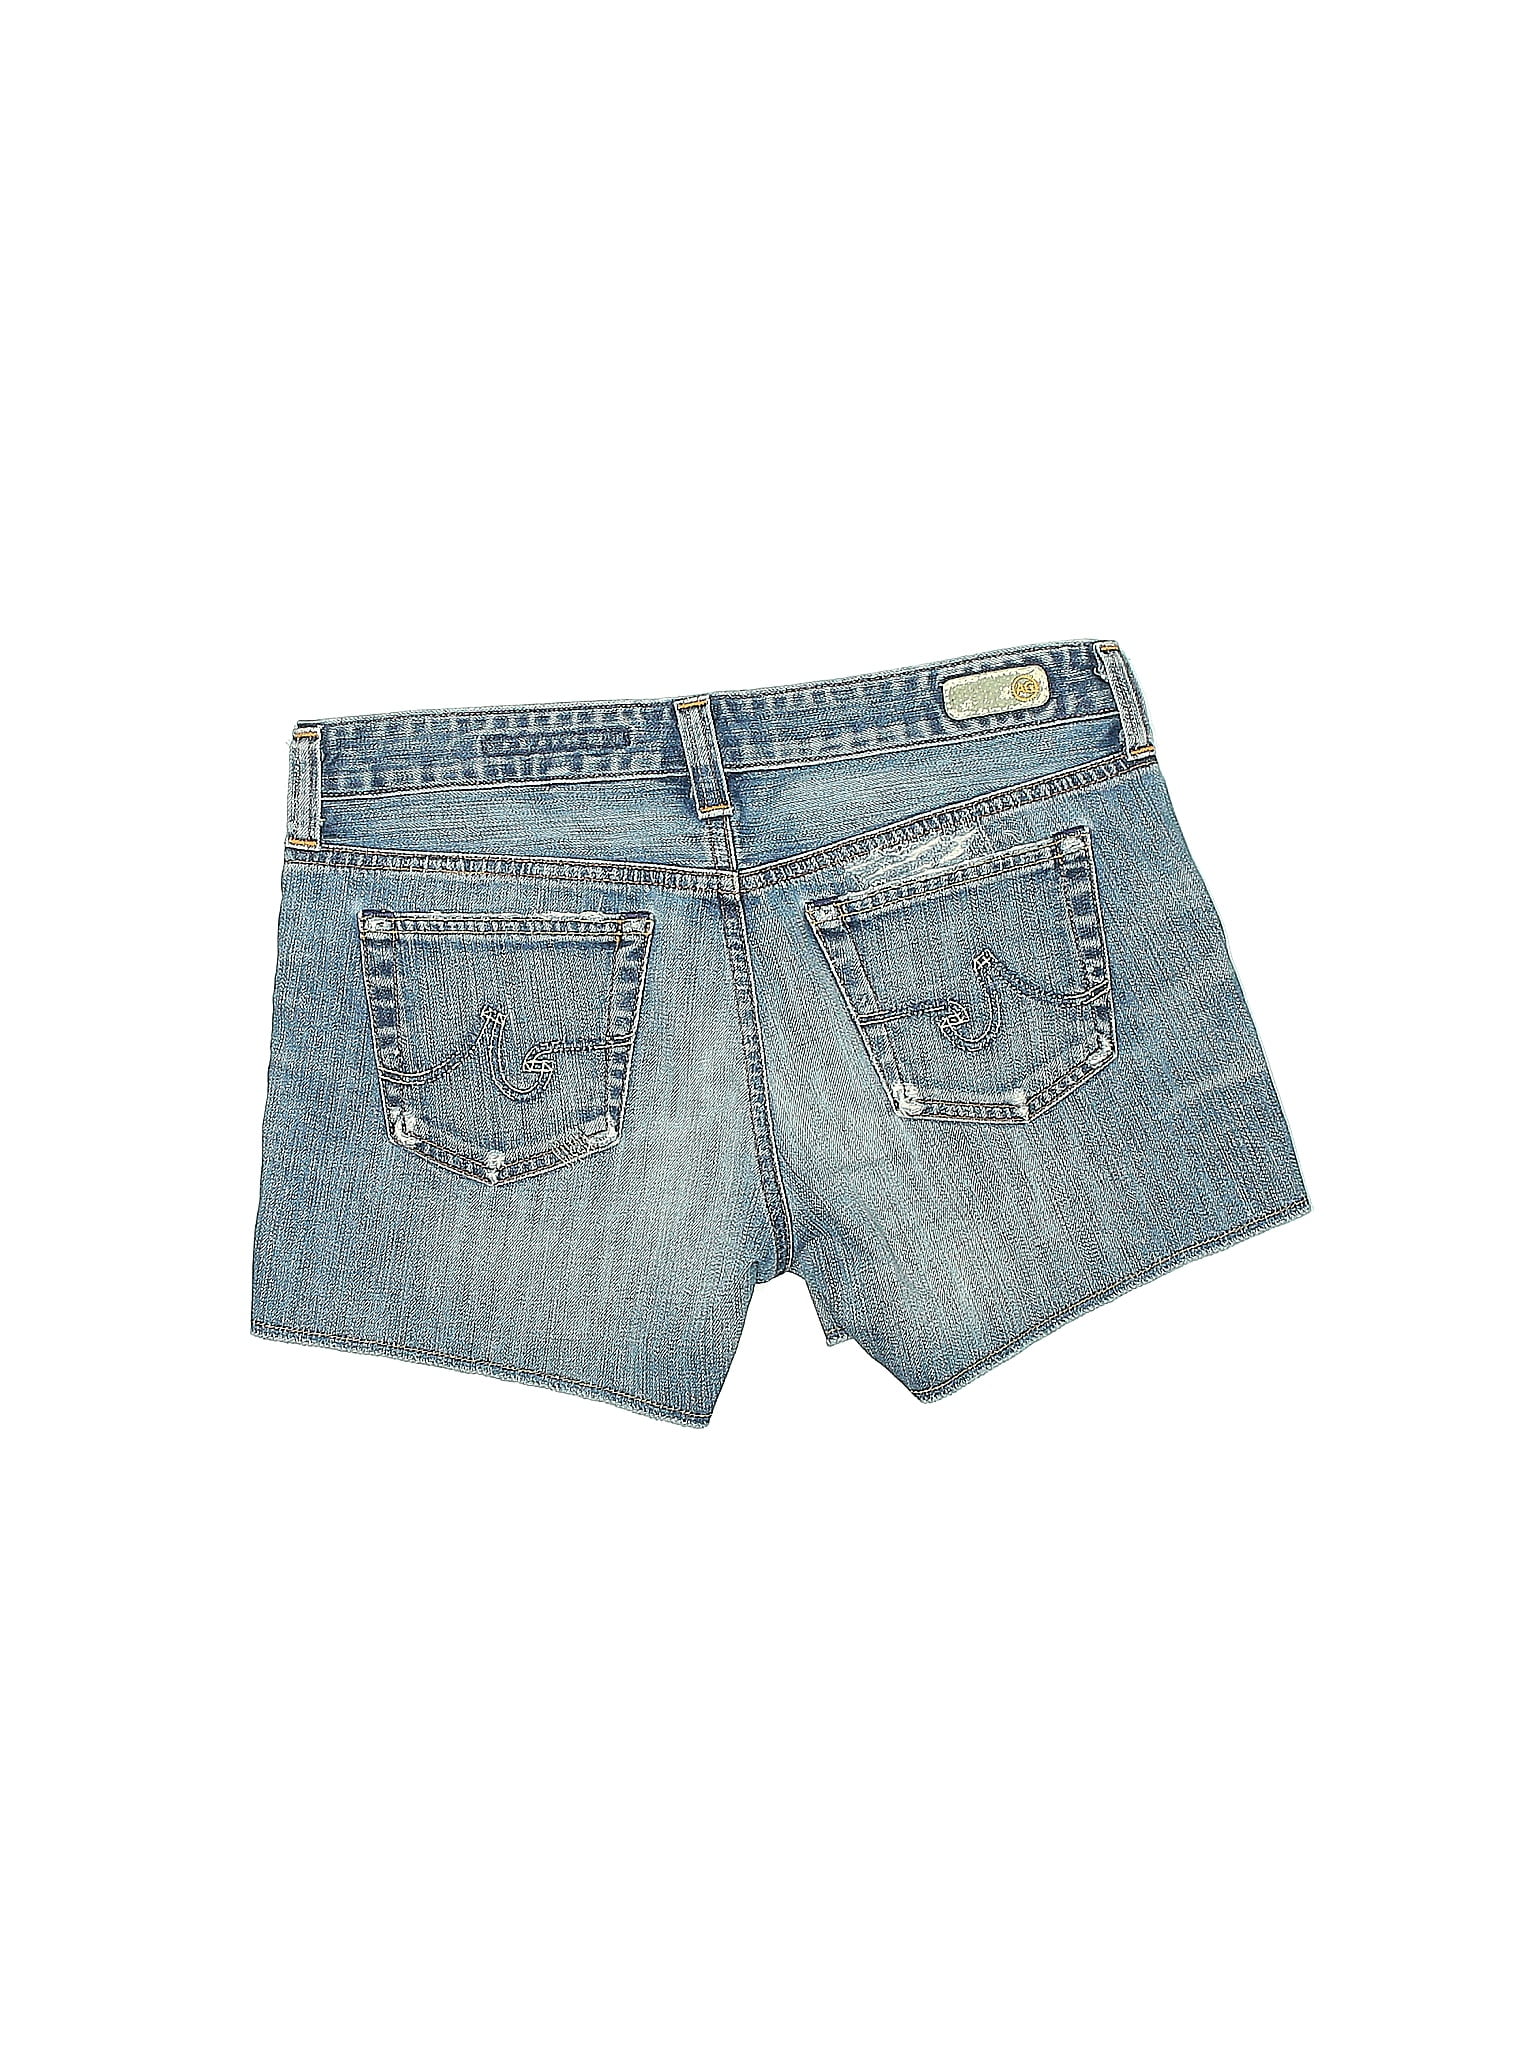 Lucky Brand Solid Blue Denim Shorts 25 Waist - 74% off